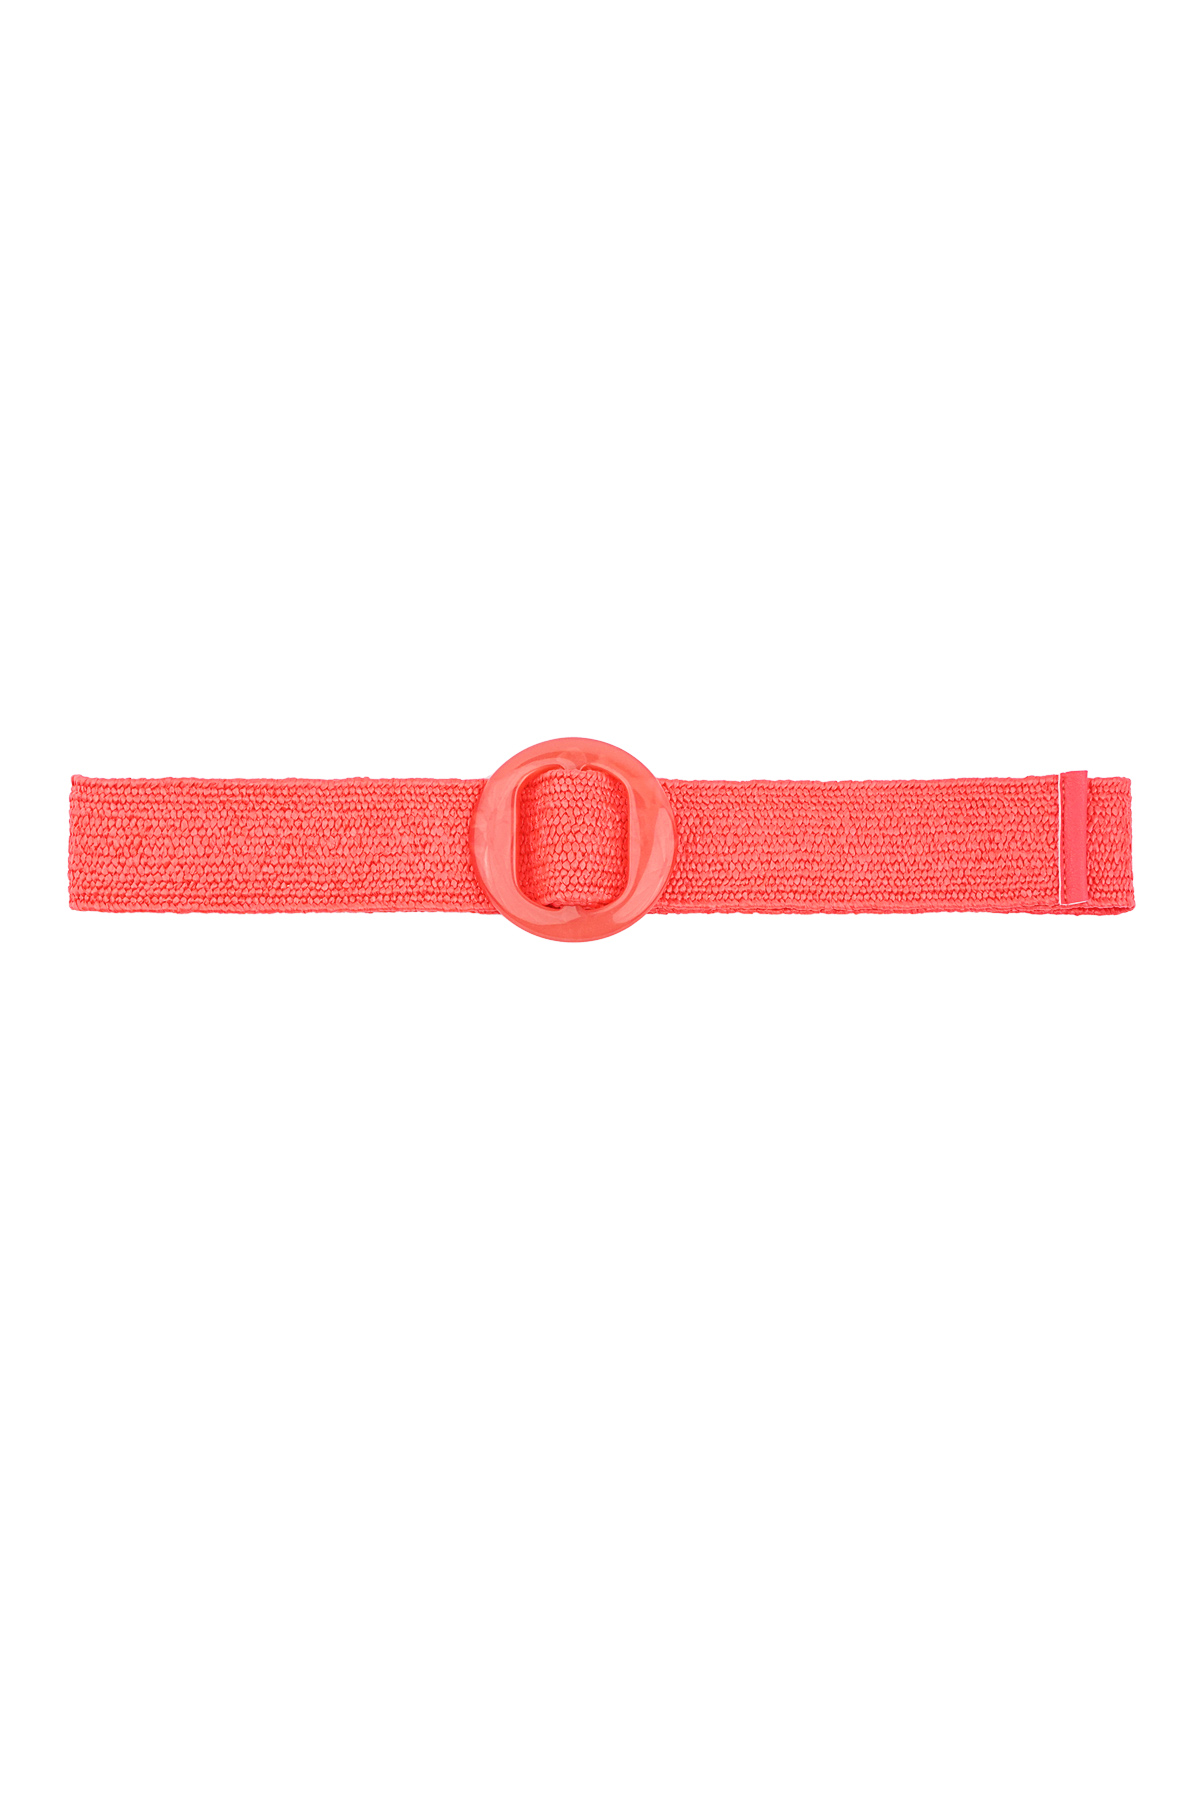 Cinturón estilo playa - rojo 